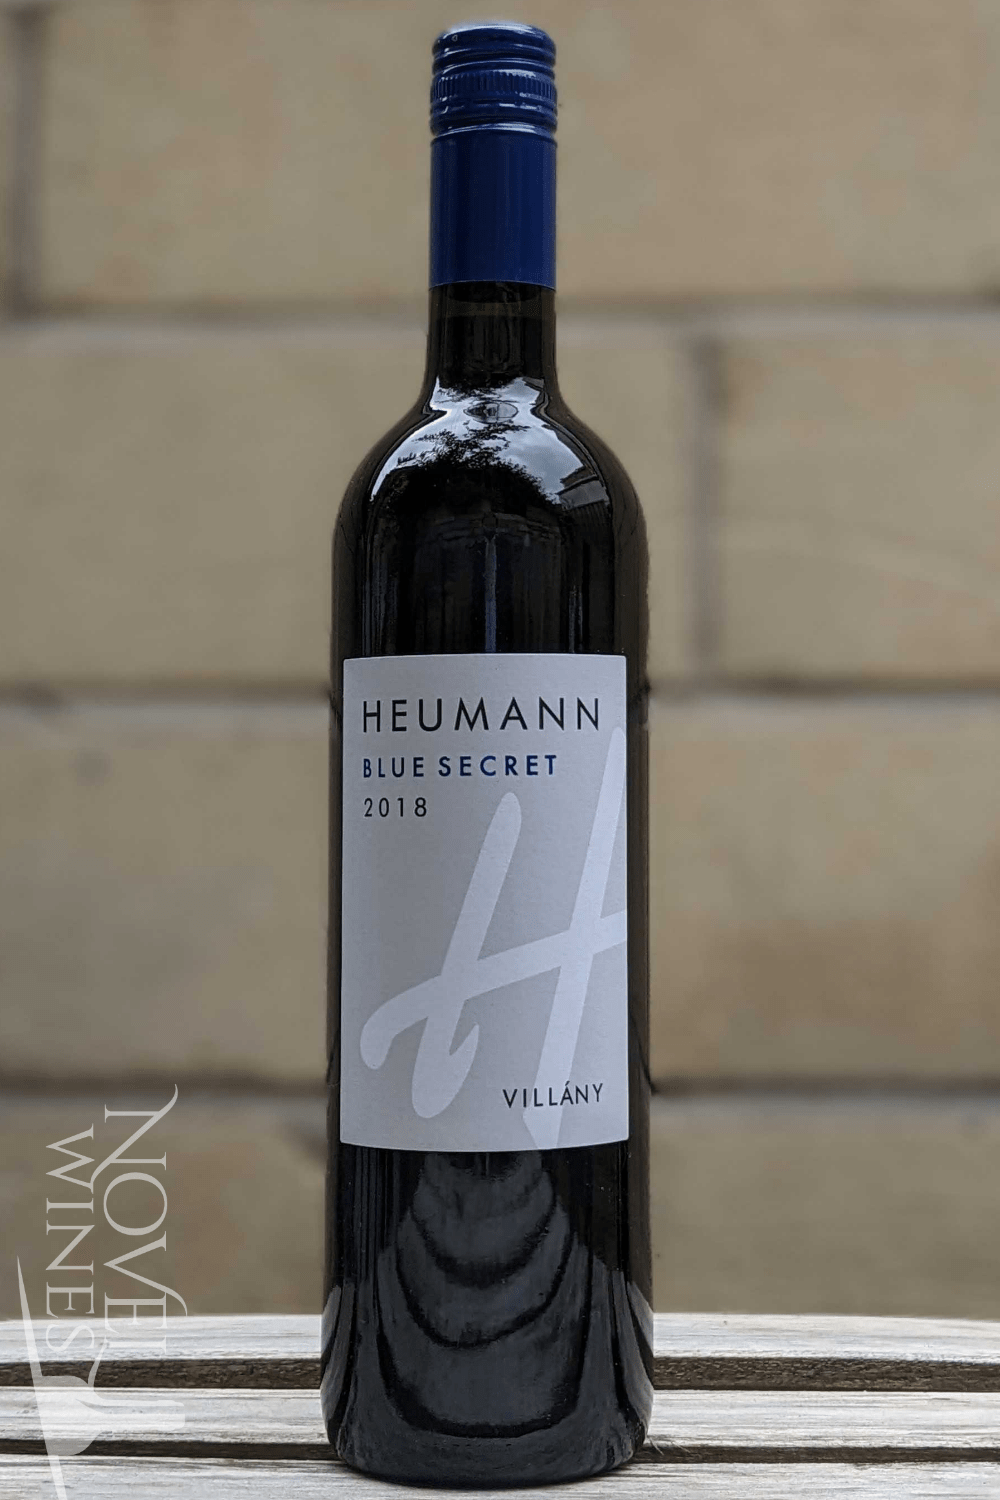 Heumann Red Wine Heumann Blue Secret Blend 2018, Hungary